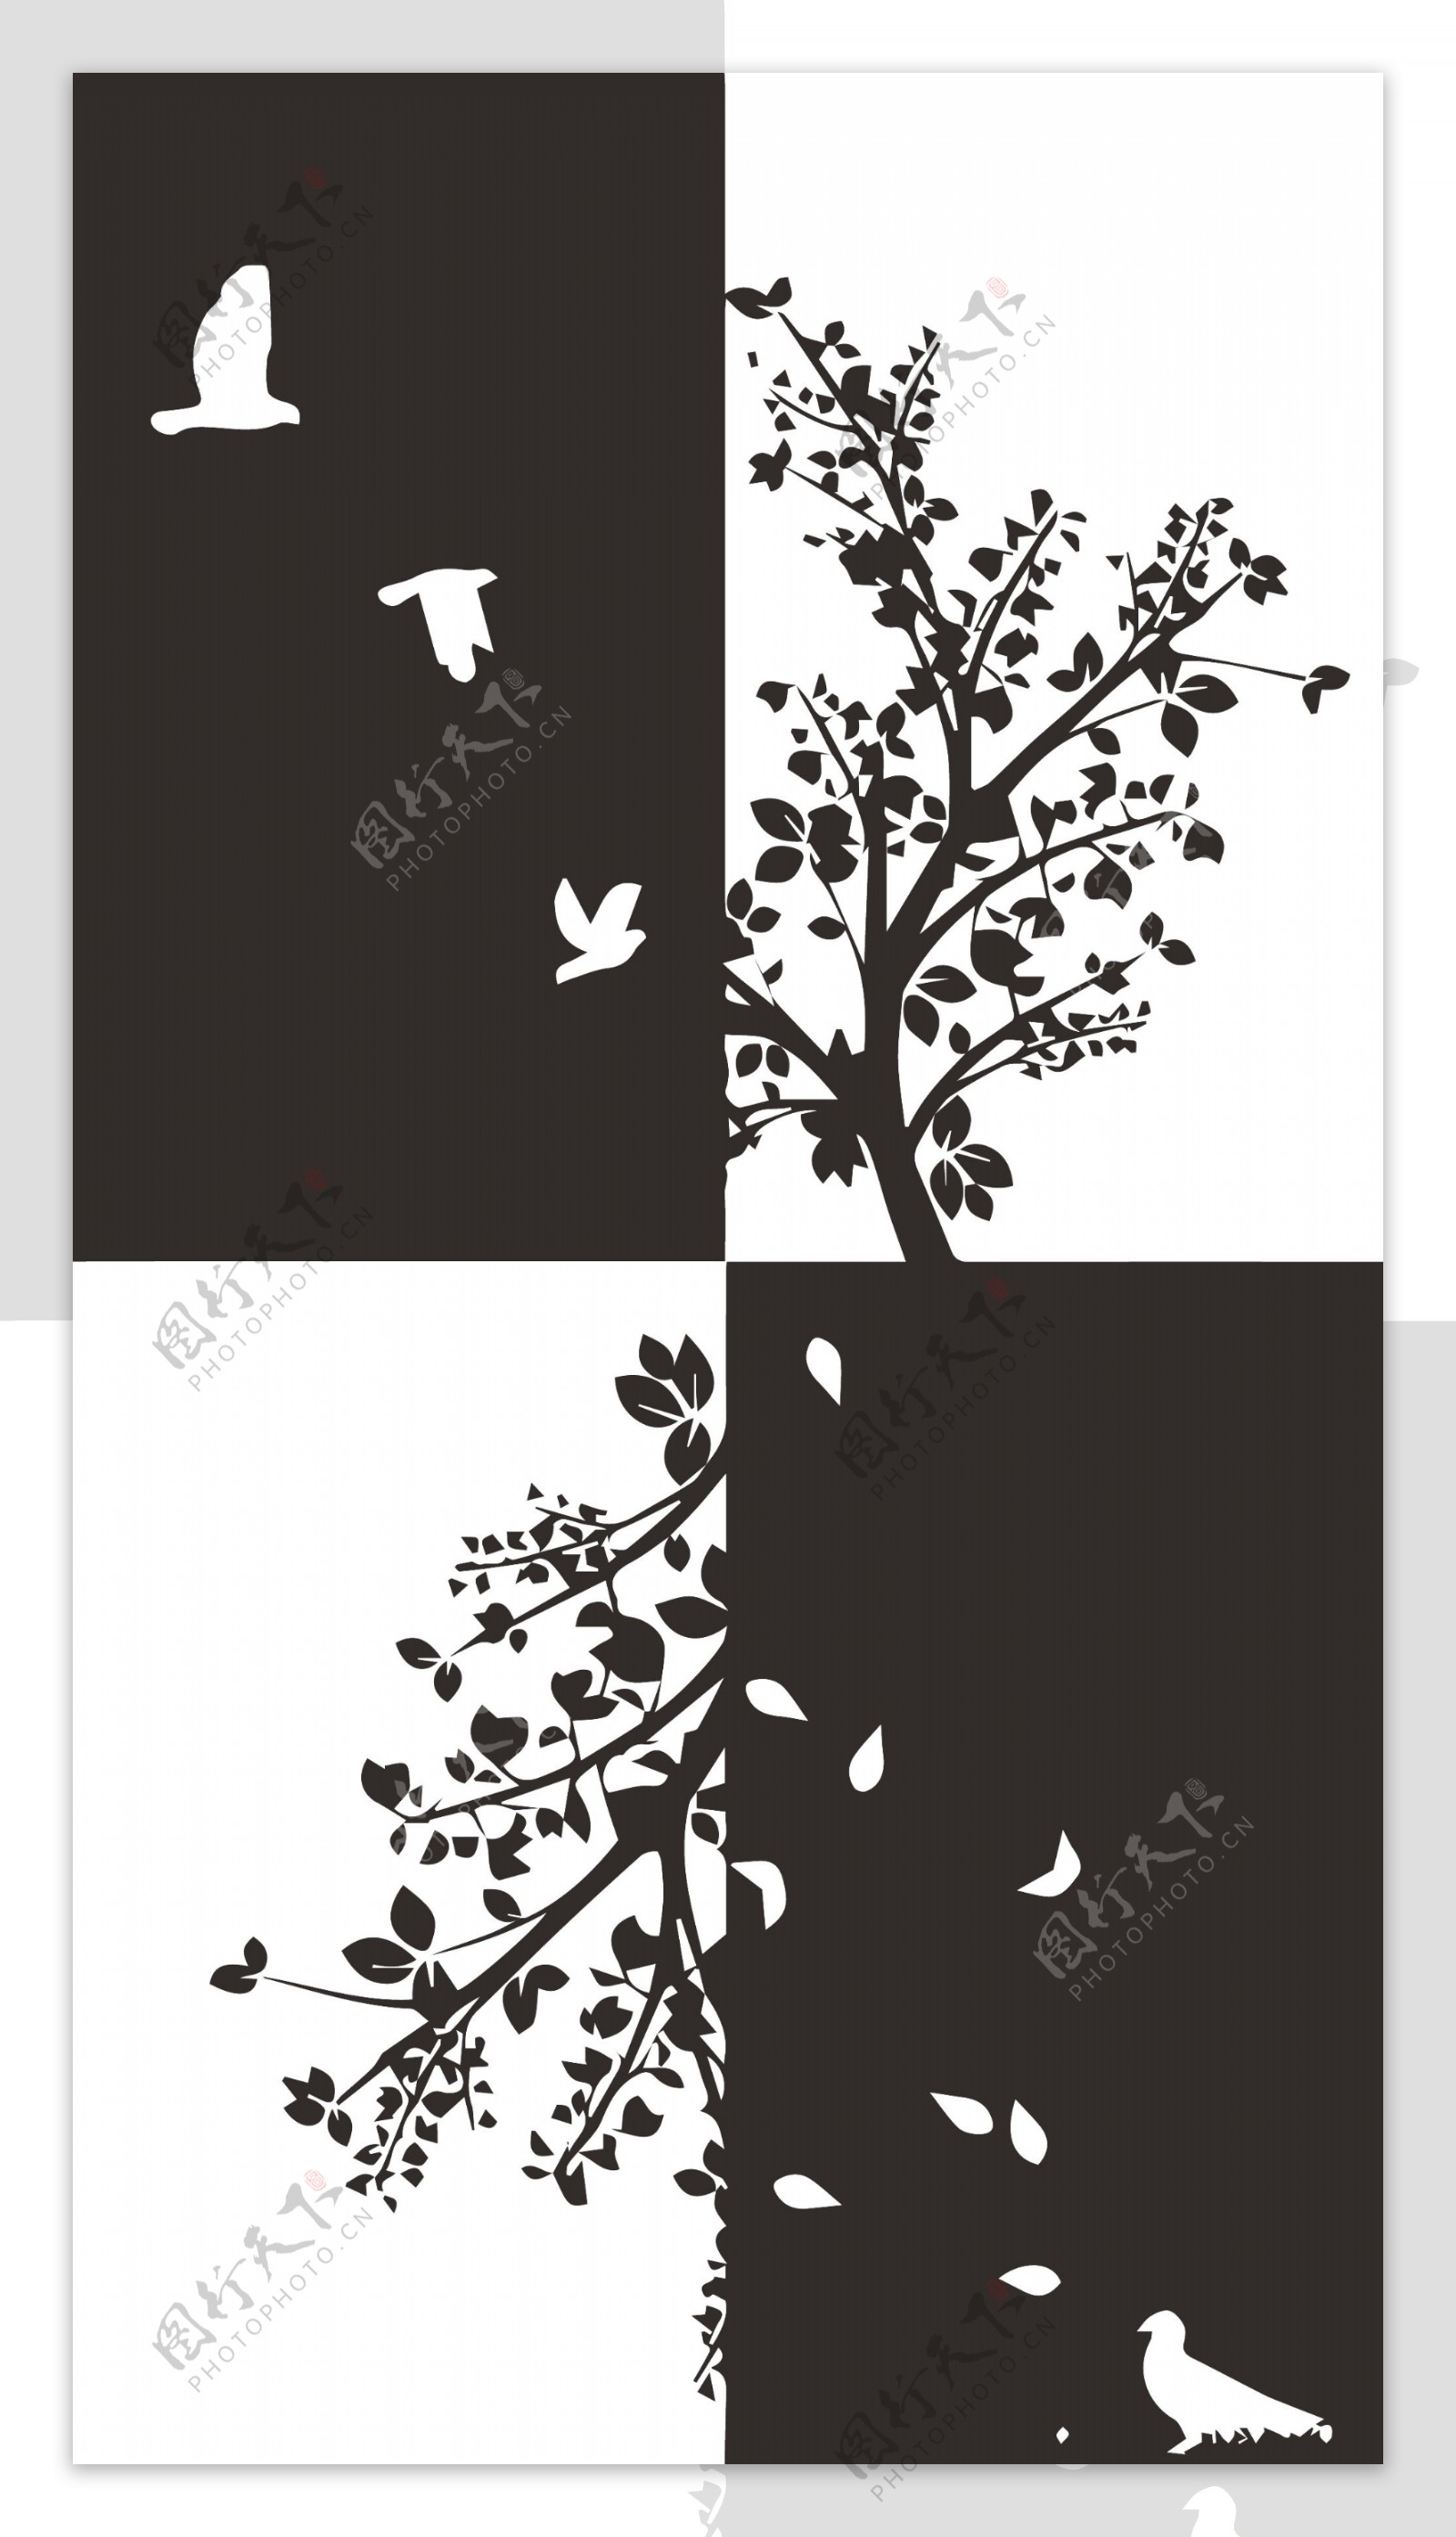 黑白装饰画装饰画风景植物动物底稿黑稿墙画鸟四格装饰画